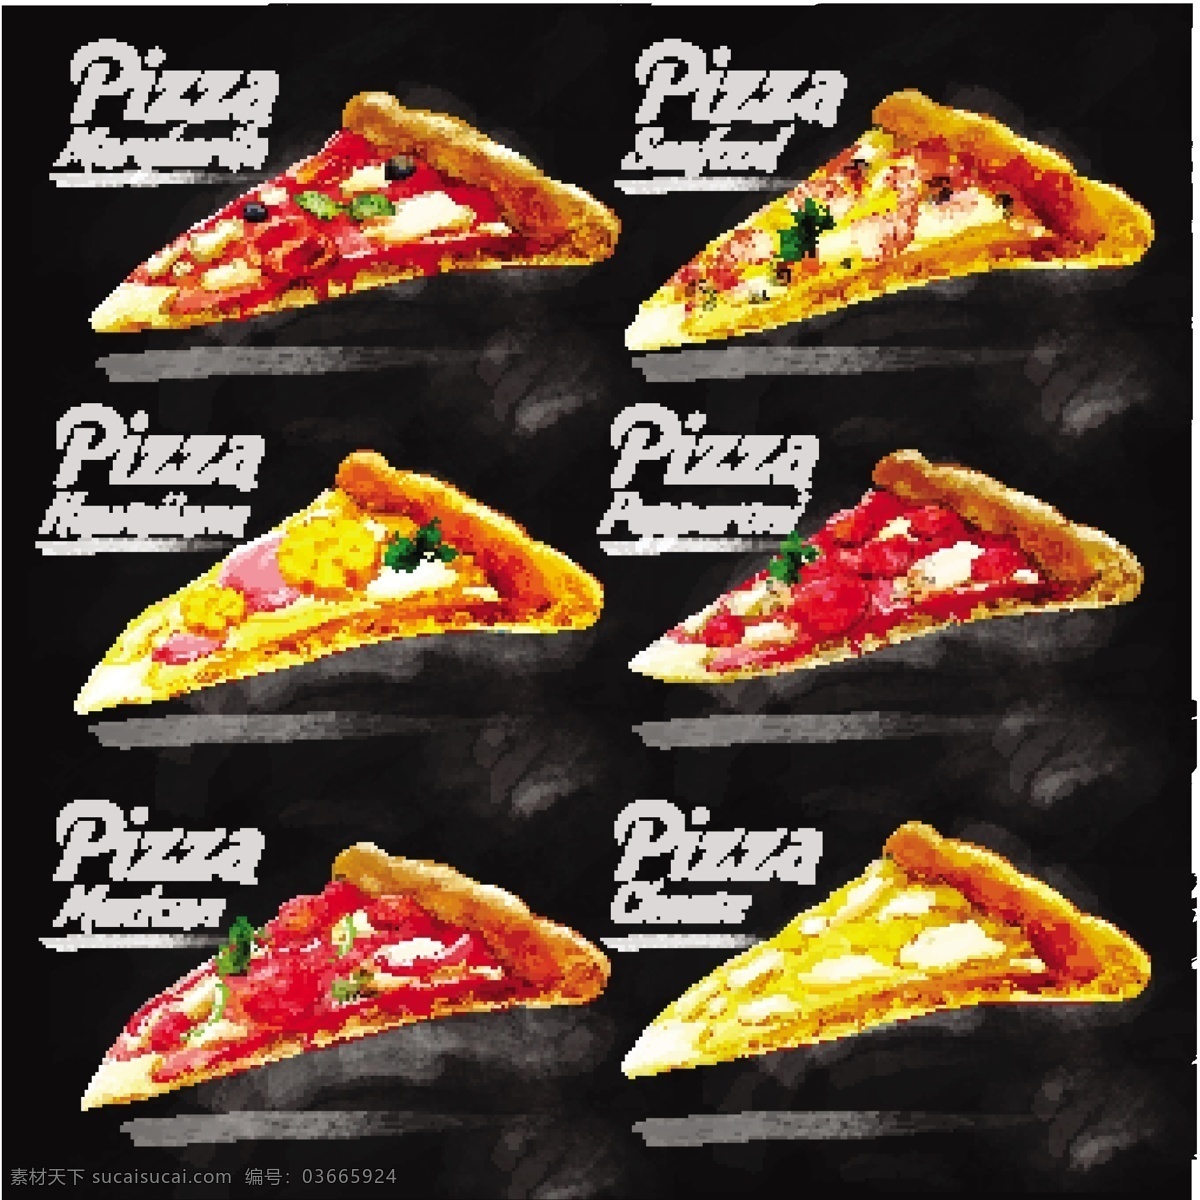 款 水彩 绘 美味 三角 披萨 矢量 玛格丽特披萨 海鲜披萨 夏威夷披萨 意大利 辣 肠 奶酪披萨 墨西哥披萨 快餐 矢量图